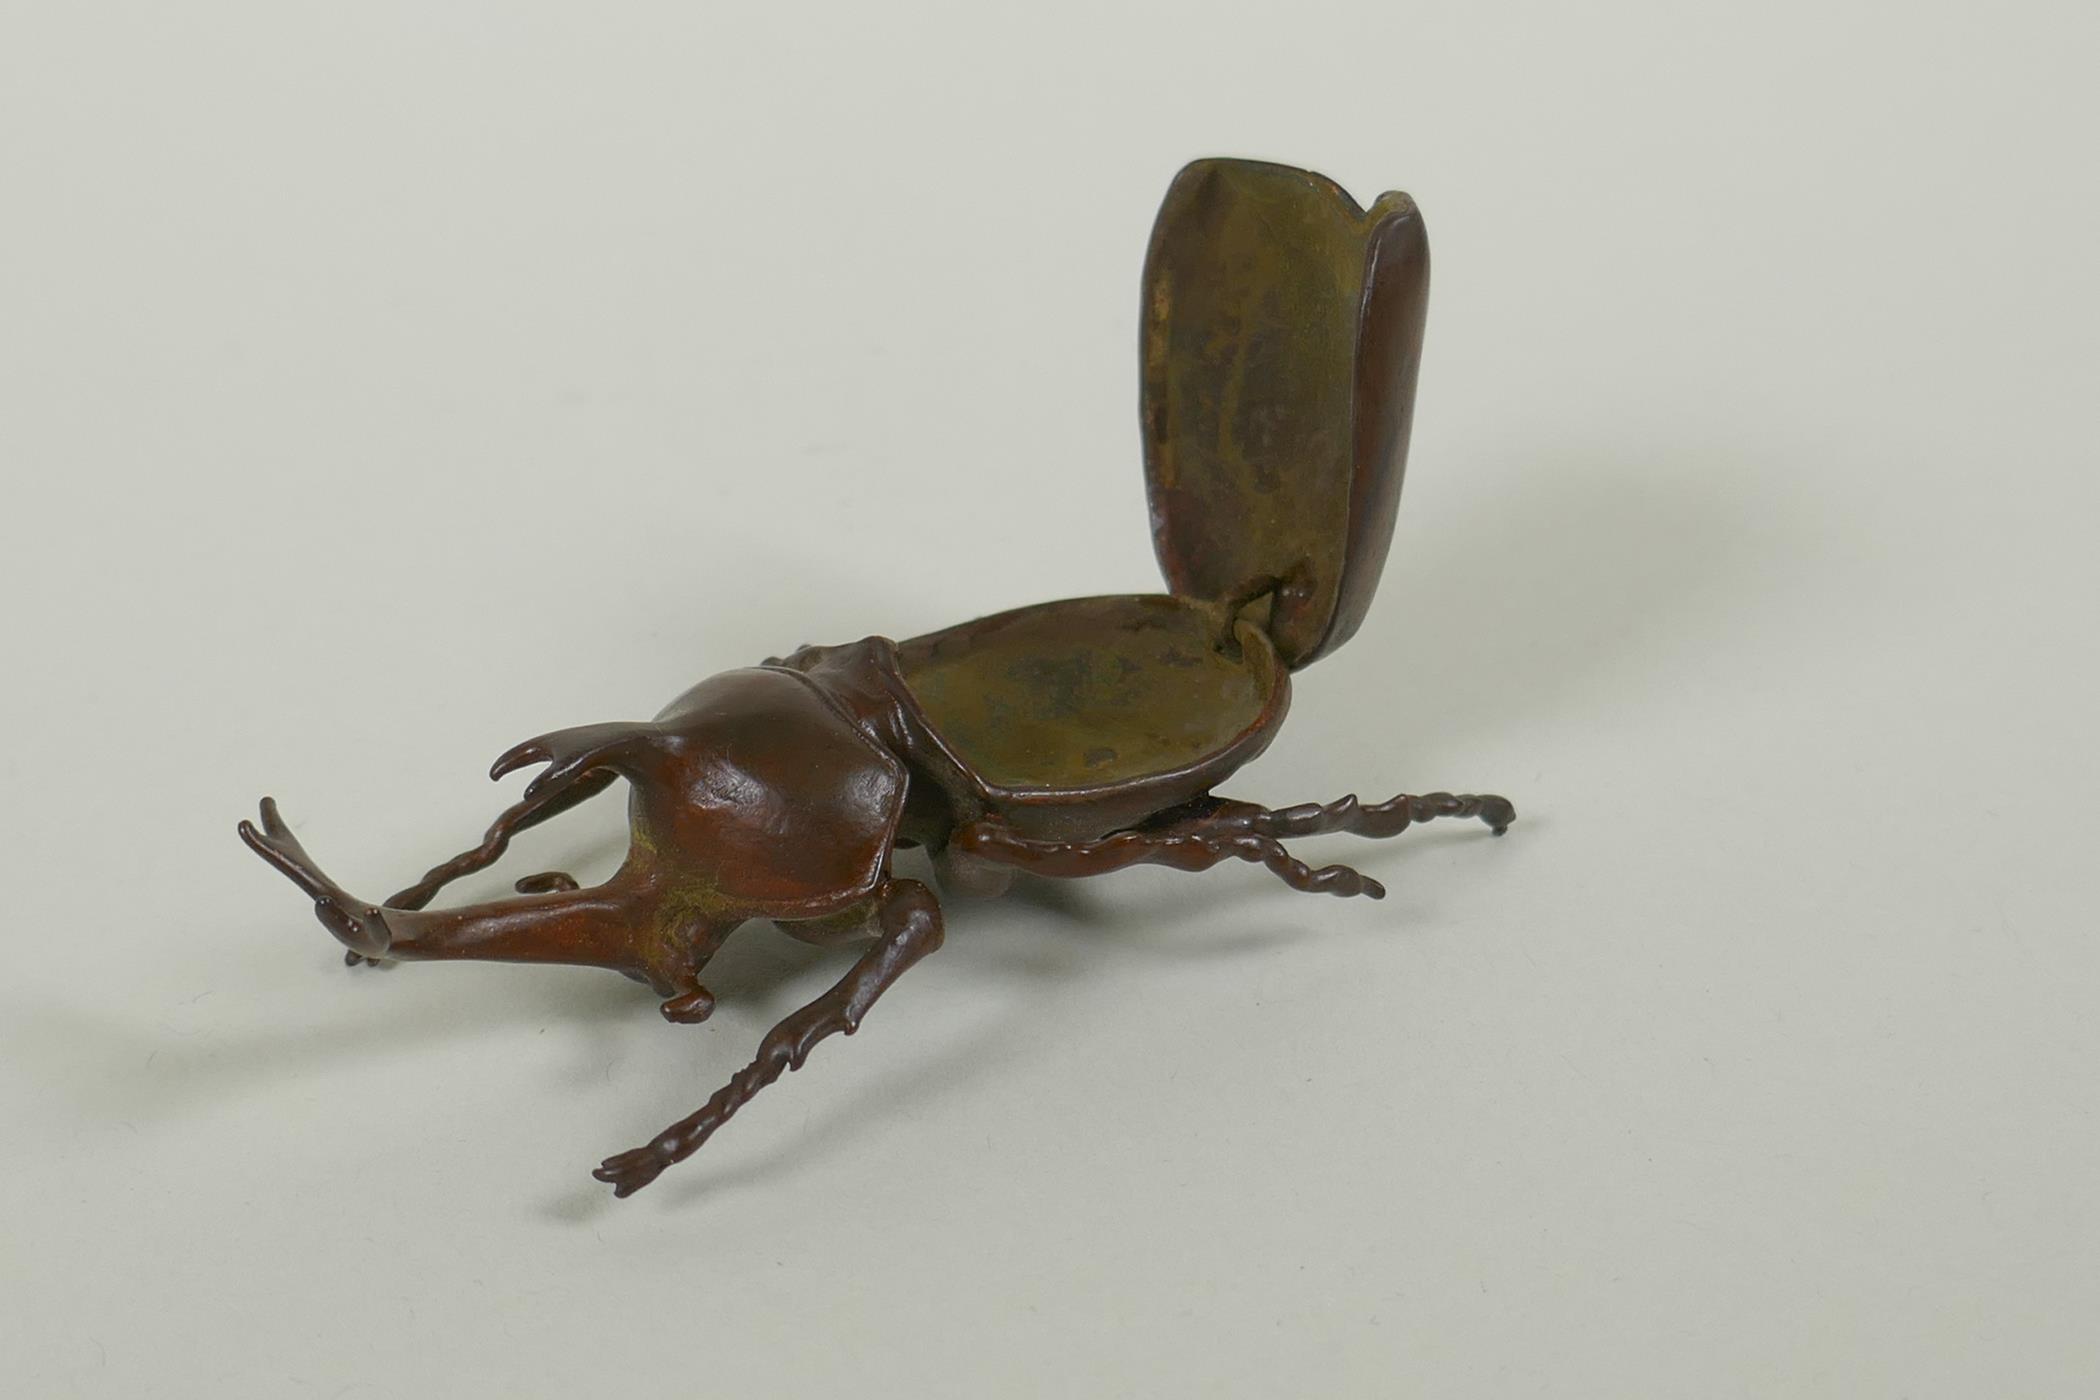 A Japanese style bronze okimono rhinoceros beetle, 9cm long - Image 3 of 3